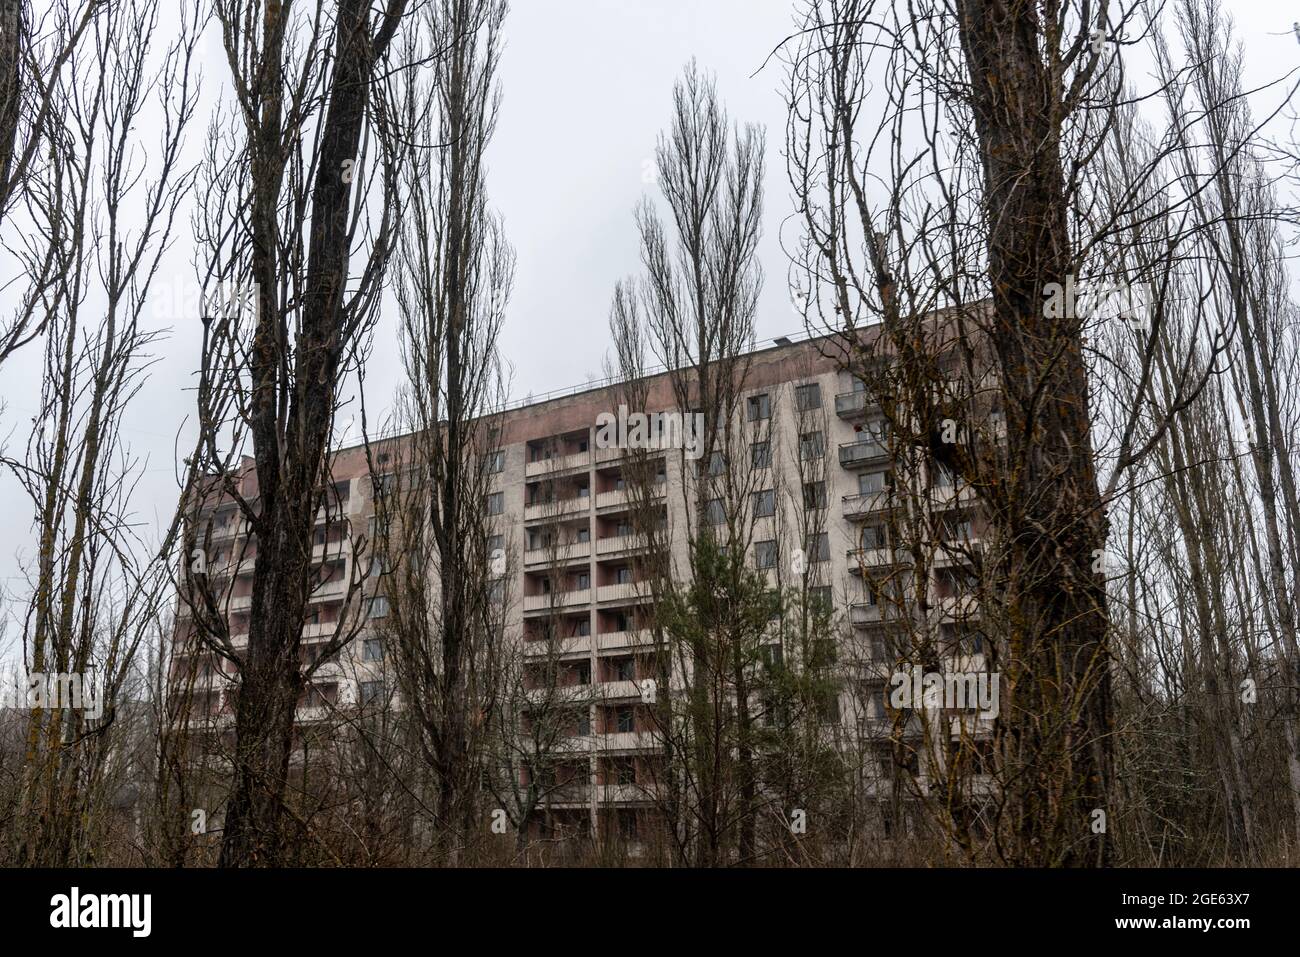 Sperrzone von Tschernobyl. Ruinen der verlassenen Stadt Pripyat. Herbst in der Zone der Ausgrenzung. Zone mit hoher Radioaktivität. Spiegelbild Blick auf Geisterstadt. Stockfoto